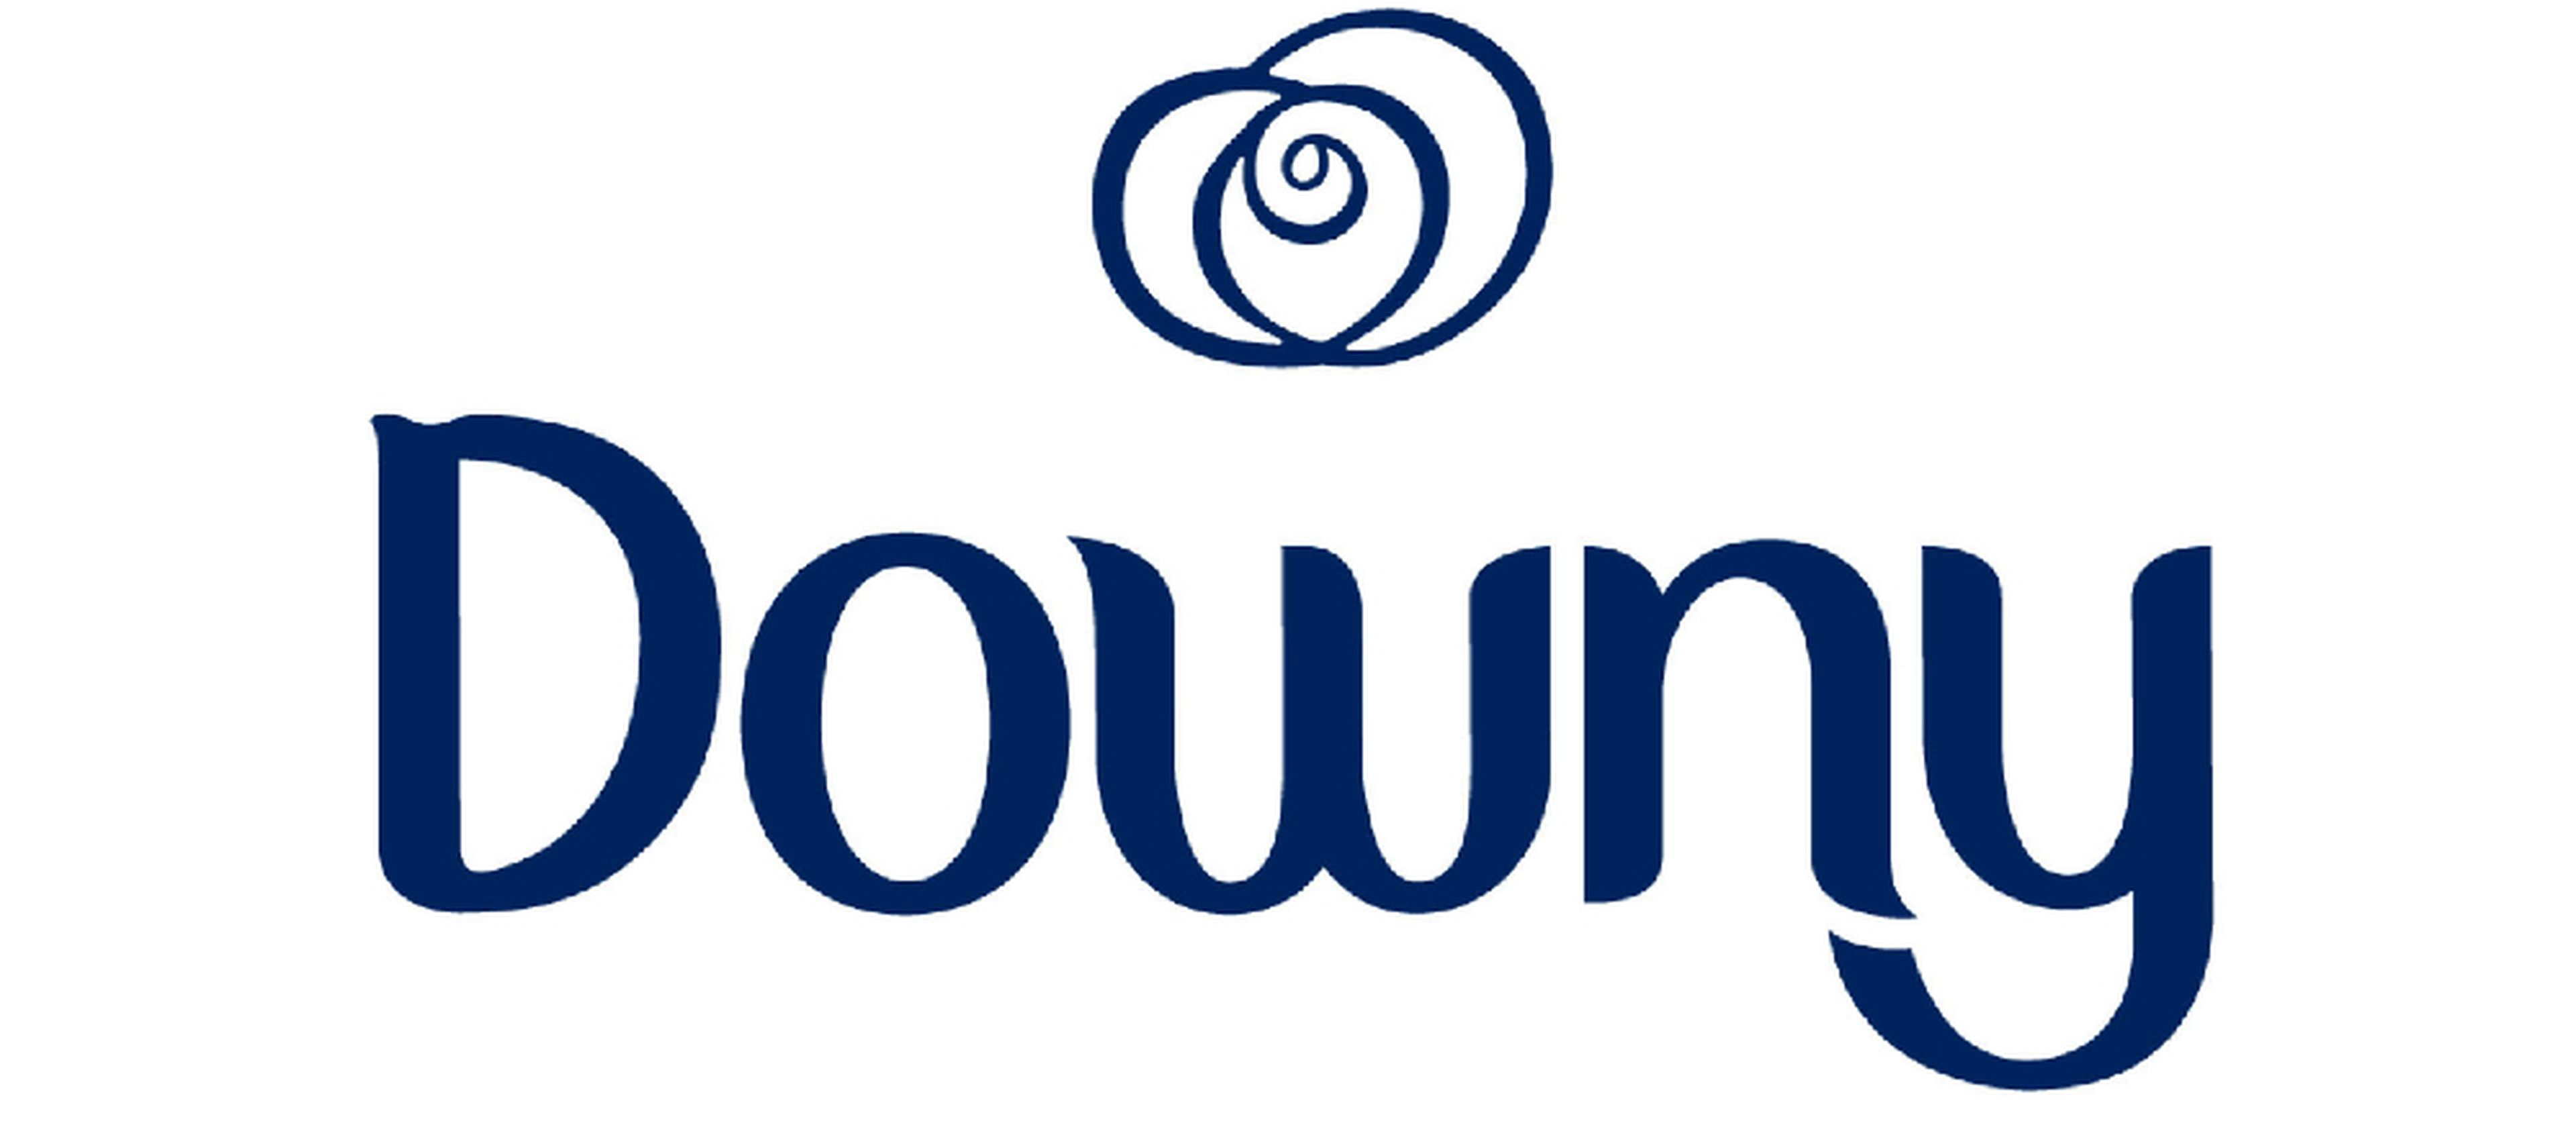 Downy es una marca de suavizante para ropa producida por Procter & Gamble que cuenta con un gran nicho de mercado en EE.UU.